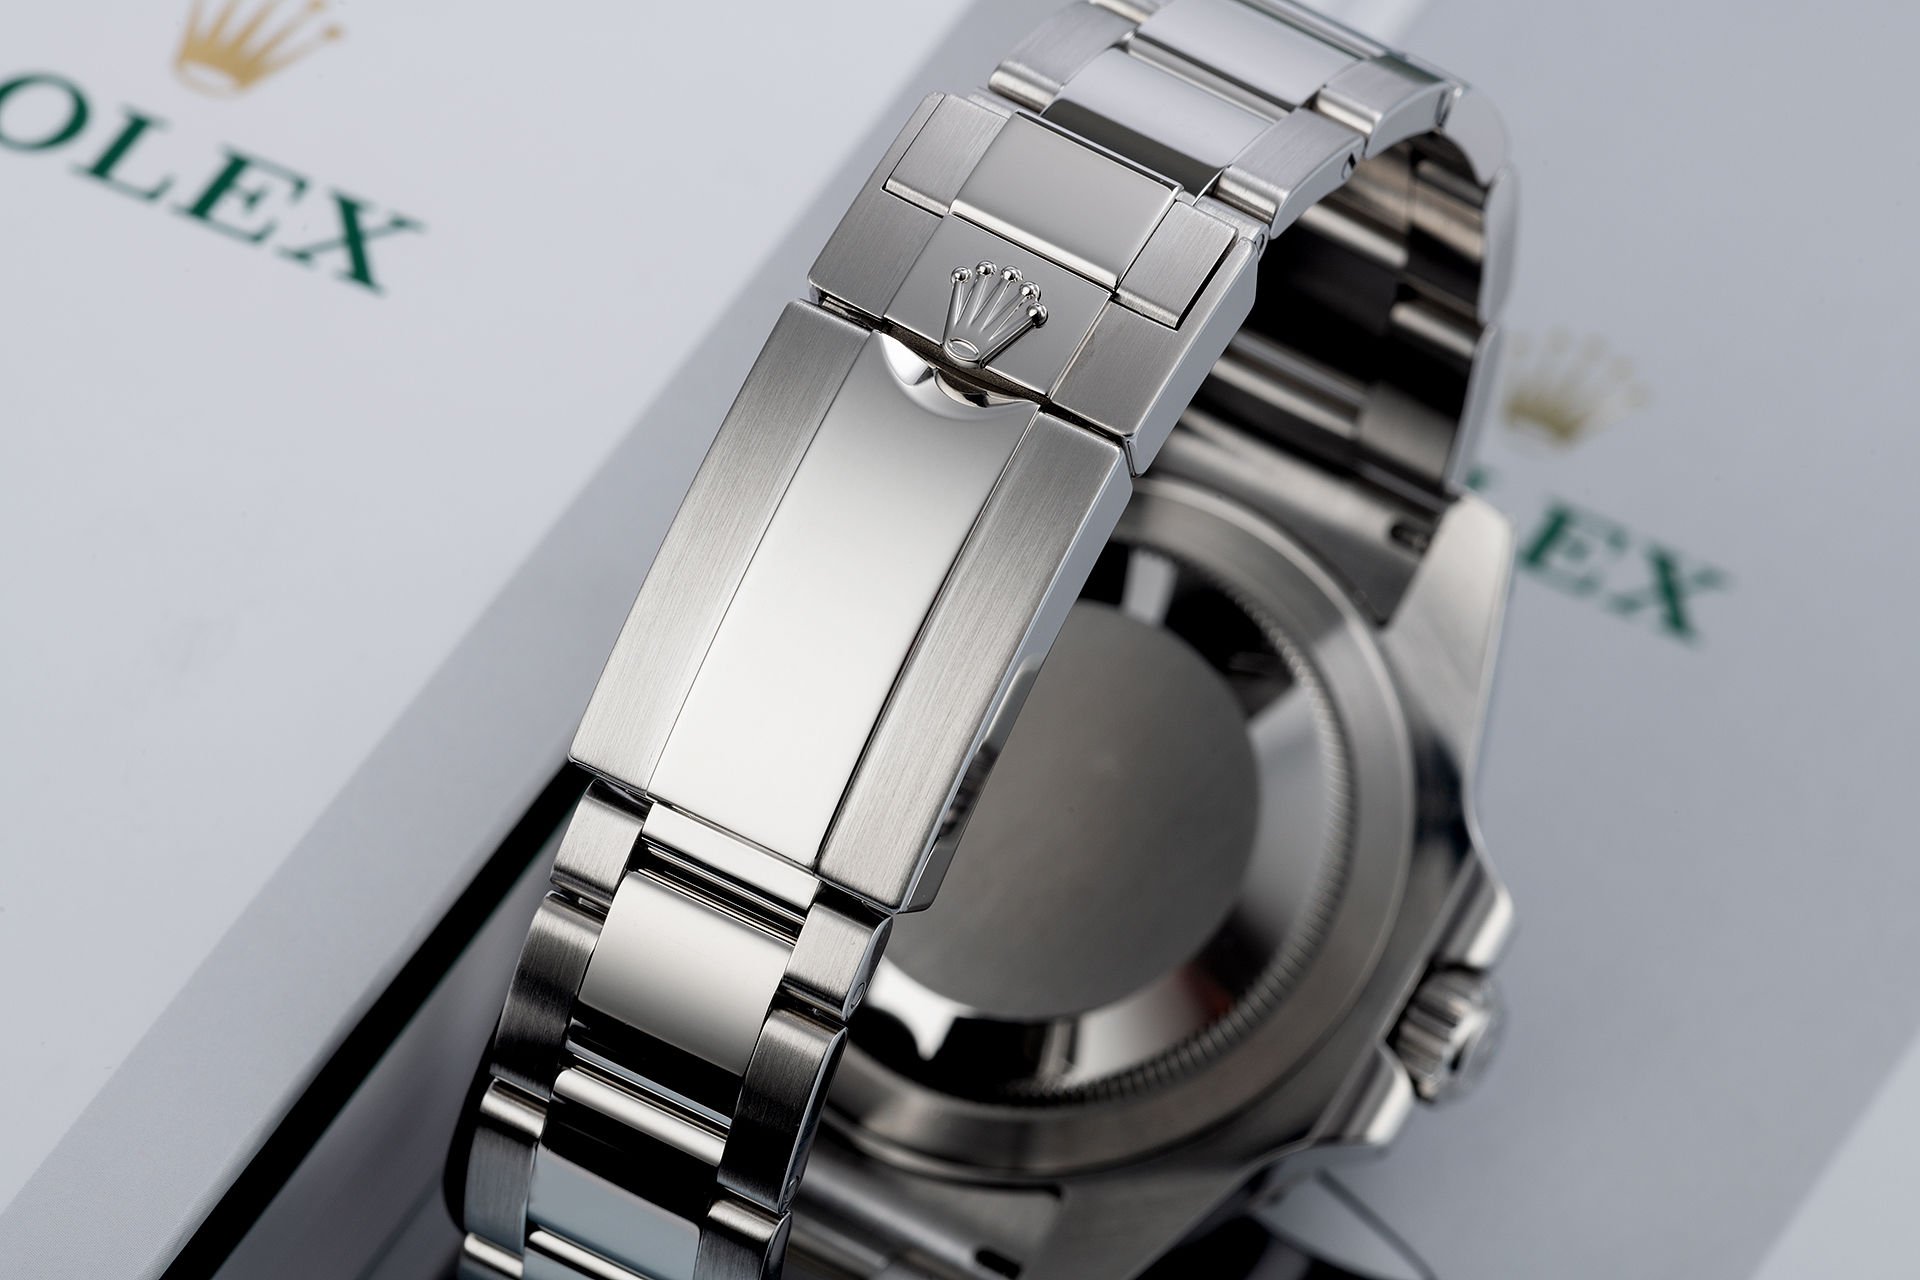 ref 116710LN | Cerachrom 'Five Year Warranty' | Rolex GMT-Master II